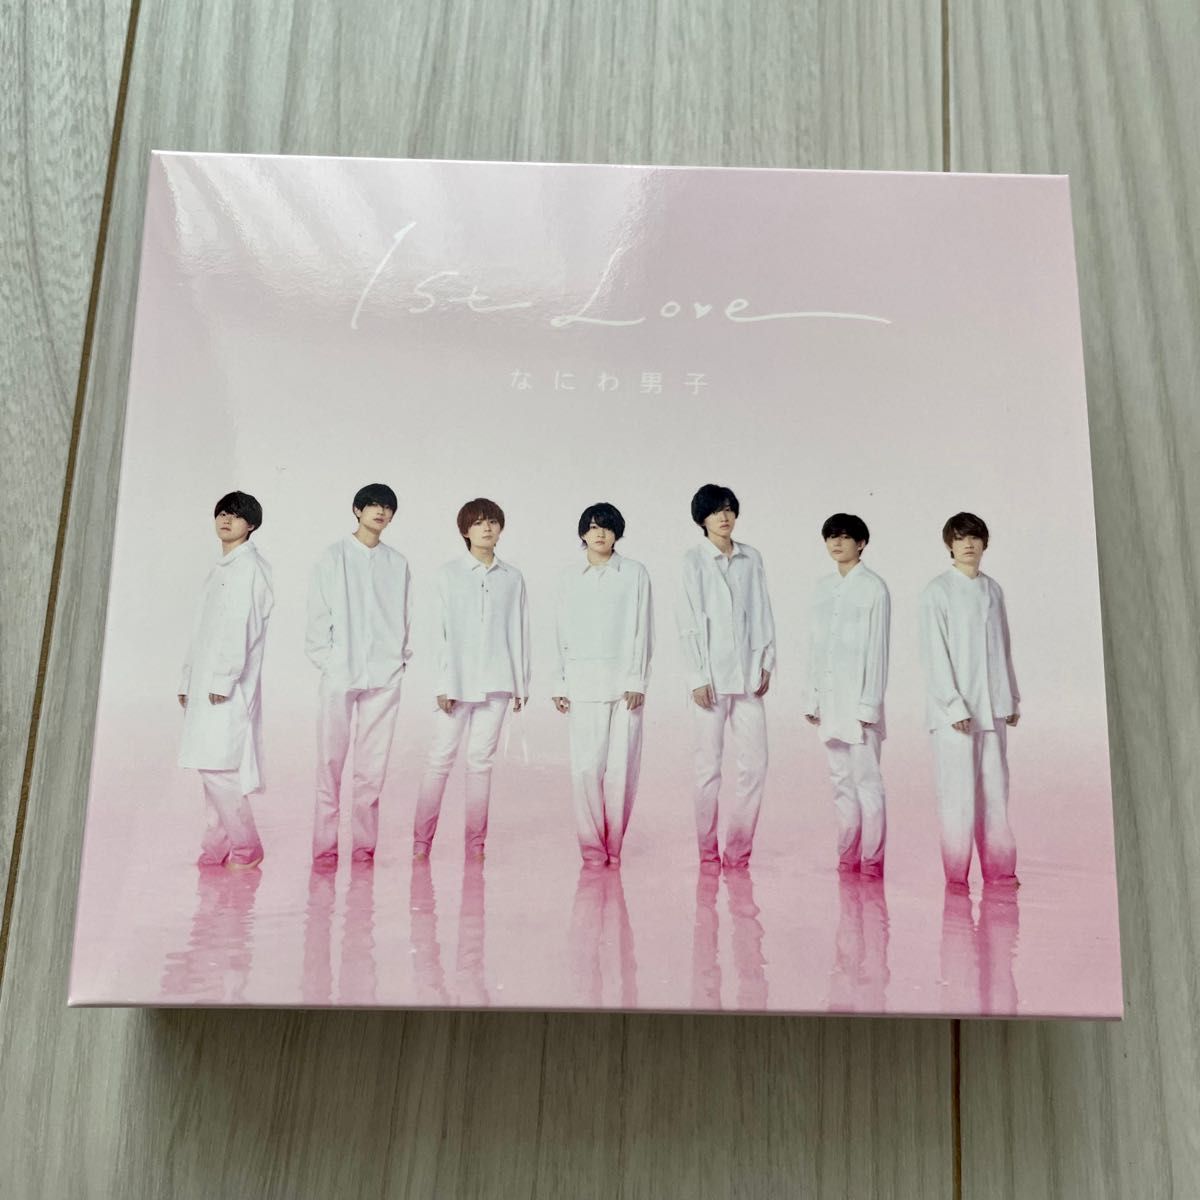 3形態Blu-rayセット なにわ男子 1st Love 初回限定盤1(2CD+BD)+初回